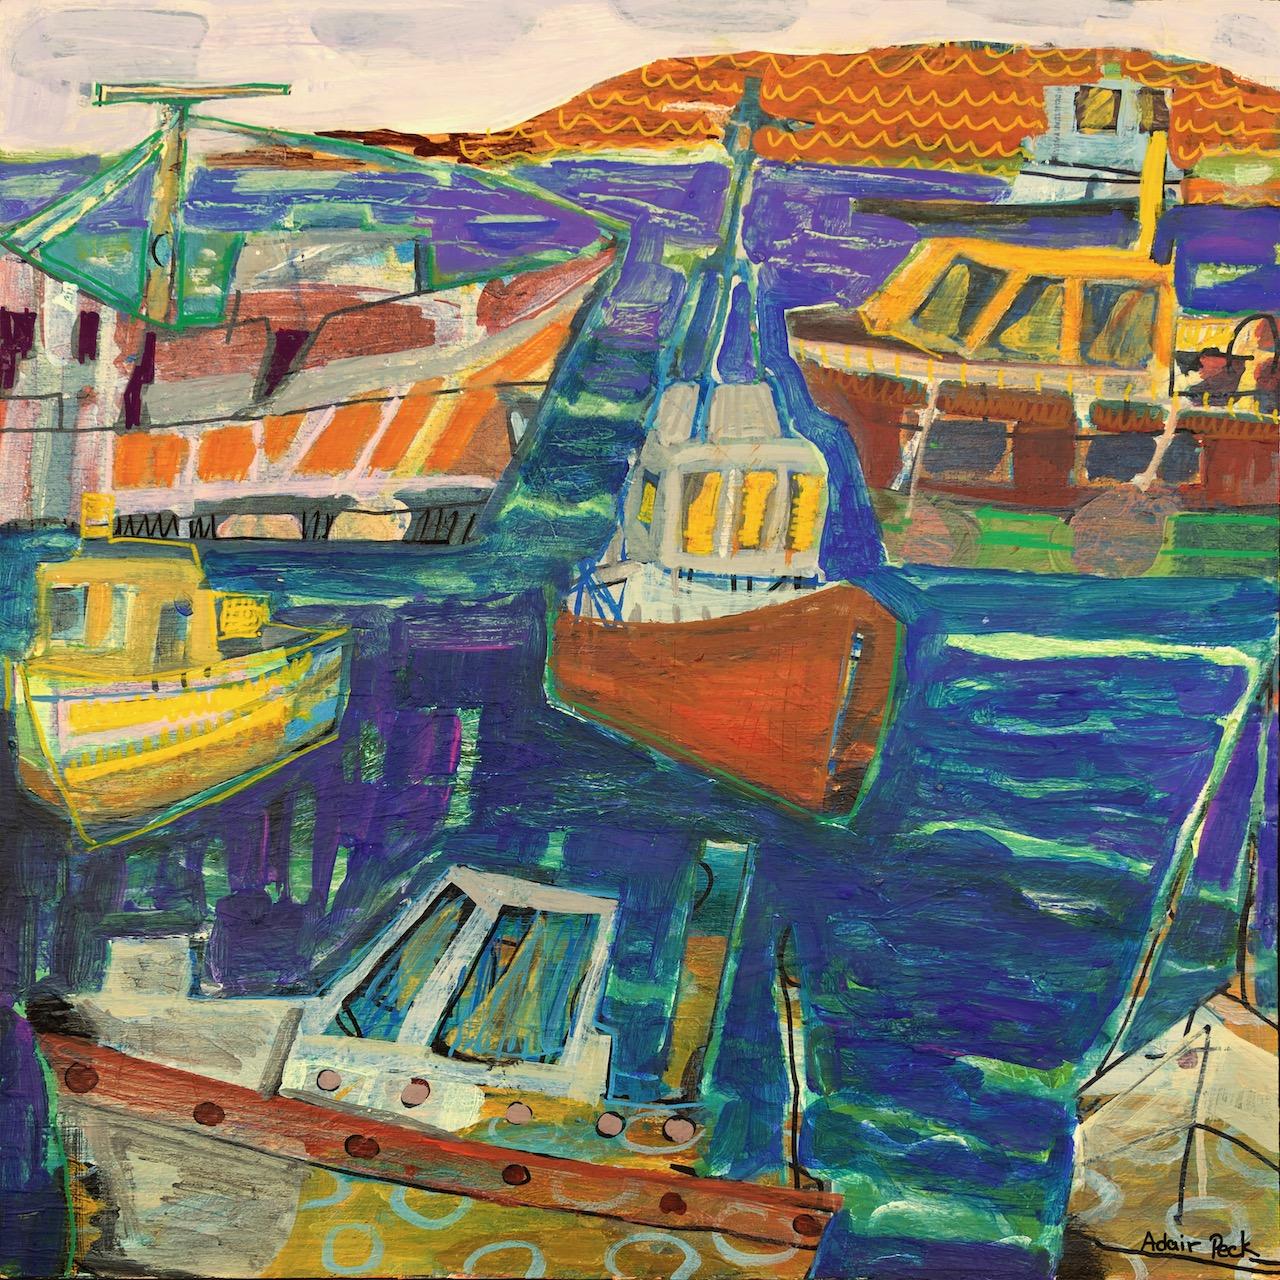 Landscape Painting Adair Peck - « End of the Day », peinture colorée en techniques mixtes représentant des bateaux de pêche